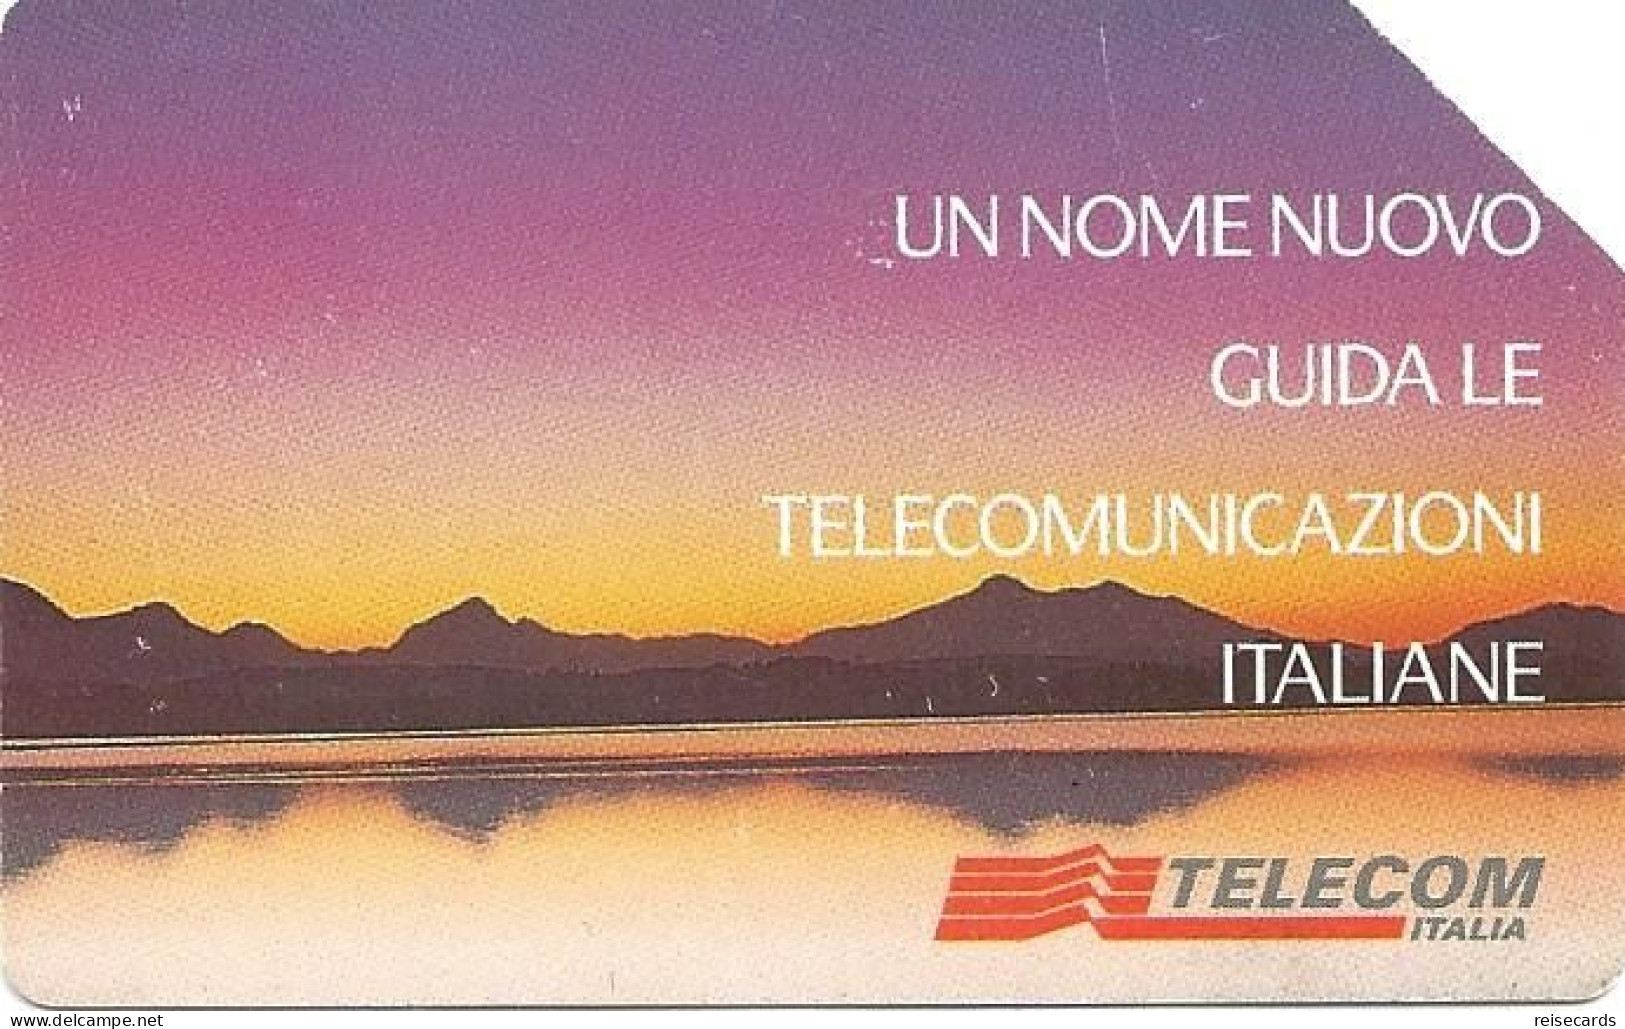 Italy: Telecom Italia - Un Nome Nuovo Guida Le Telecomunicazioni - Públicas  Publicitarias